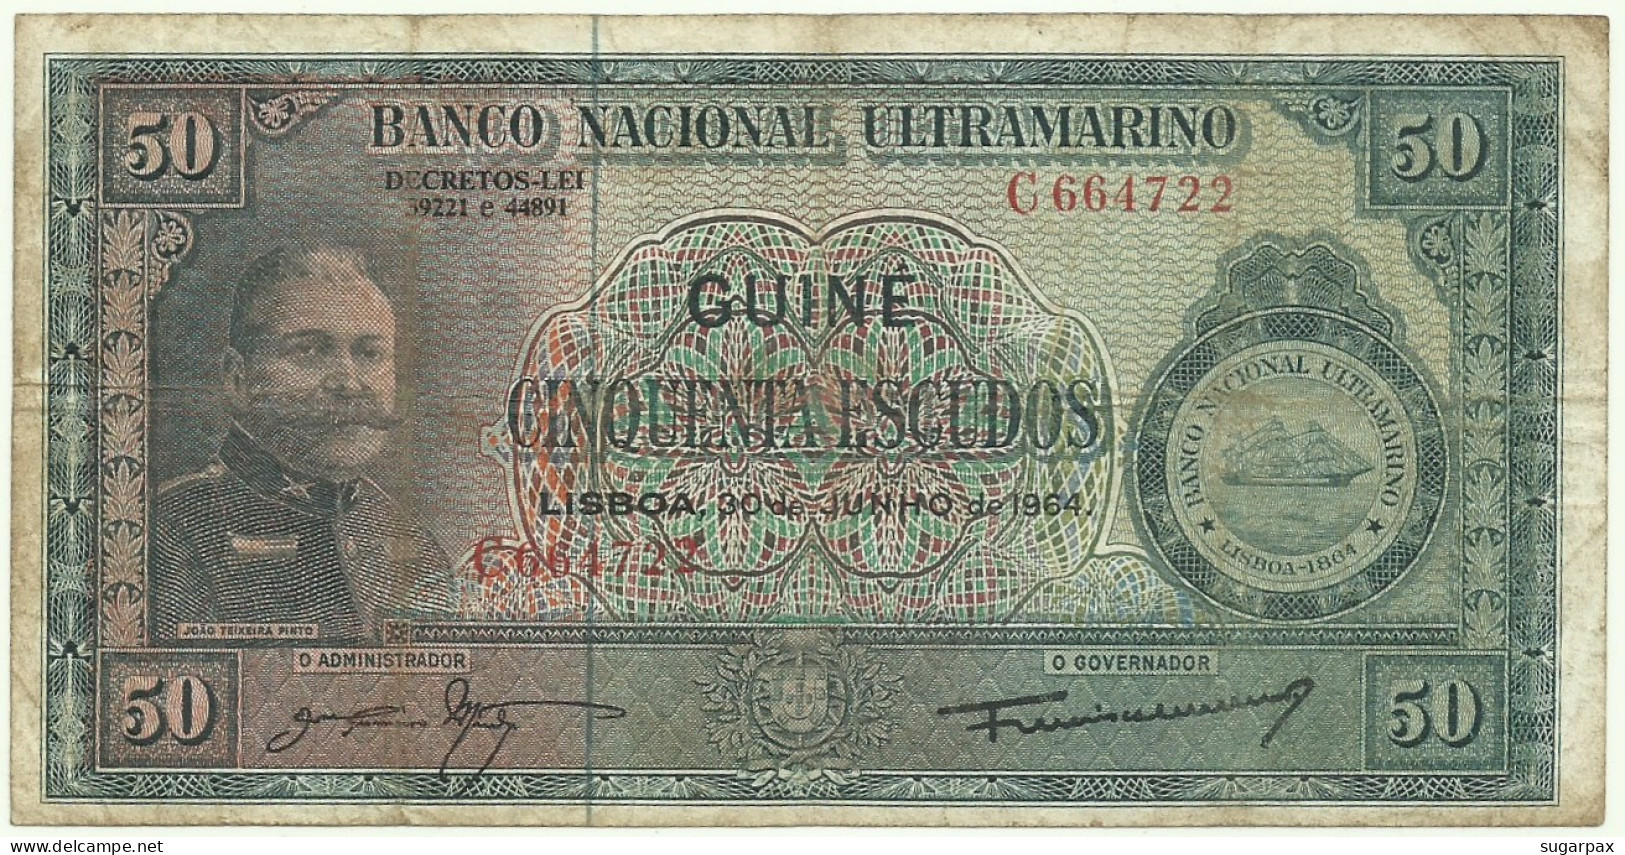 Guiné-Bissau - 50 Escudos - 30.06.1964 - P 40 - Sign Varieties - João Teixeira Pinto - PORTUGAL - Guinee-Bissau